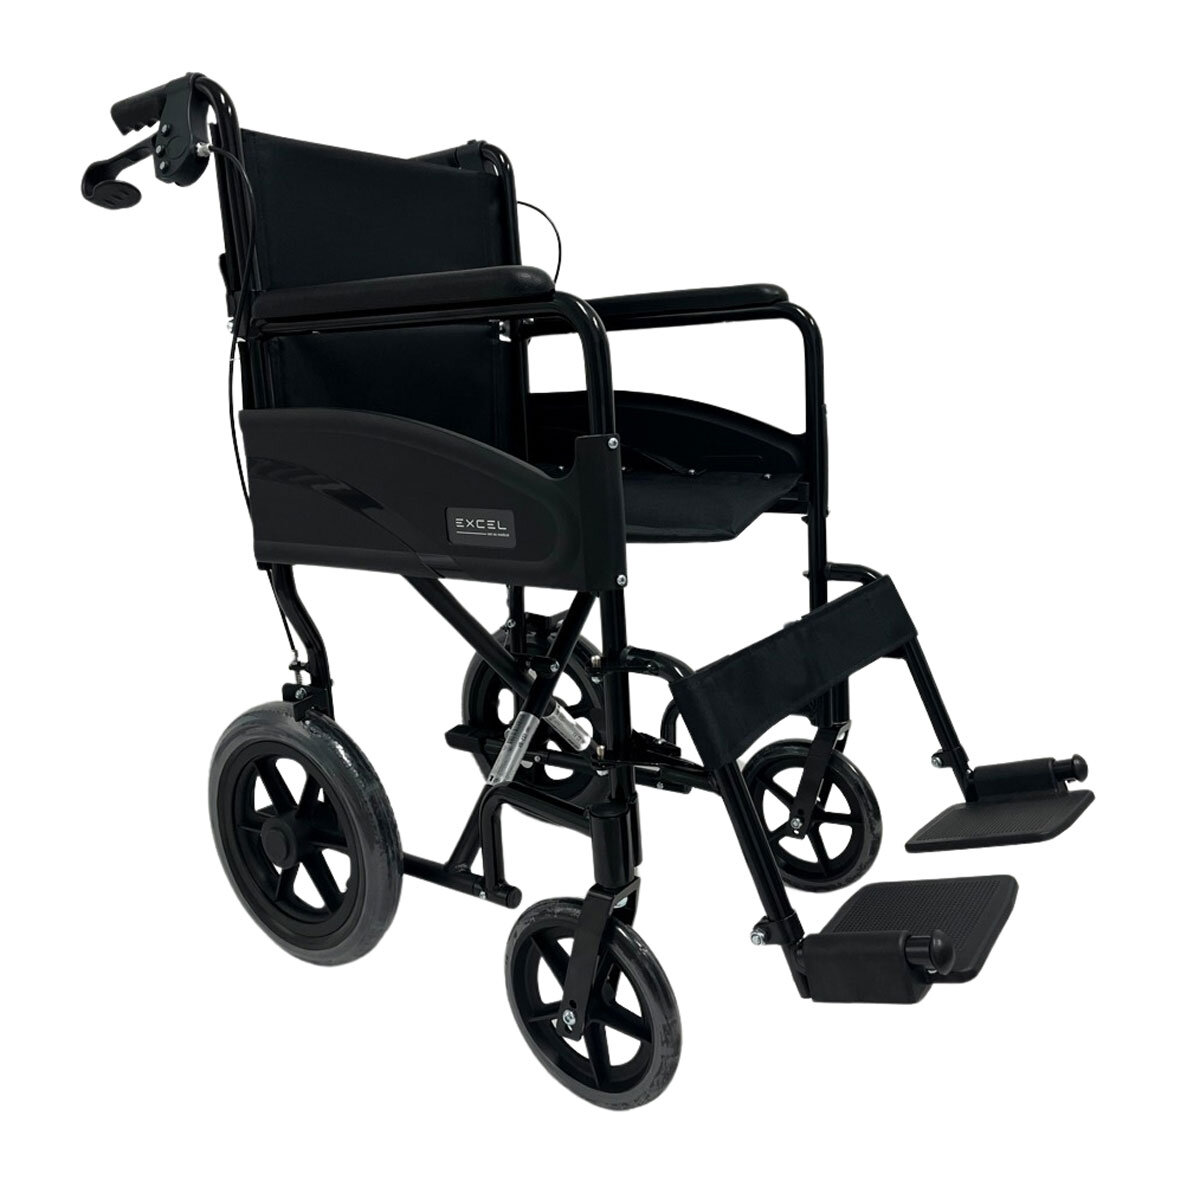 2Go Ability Access Wheelchair_12Go Ability Access Wheelchair